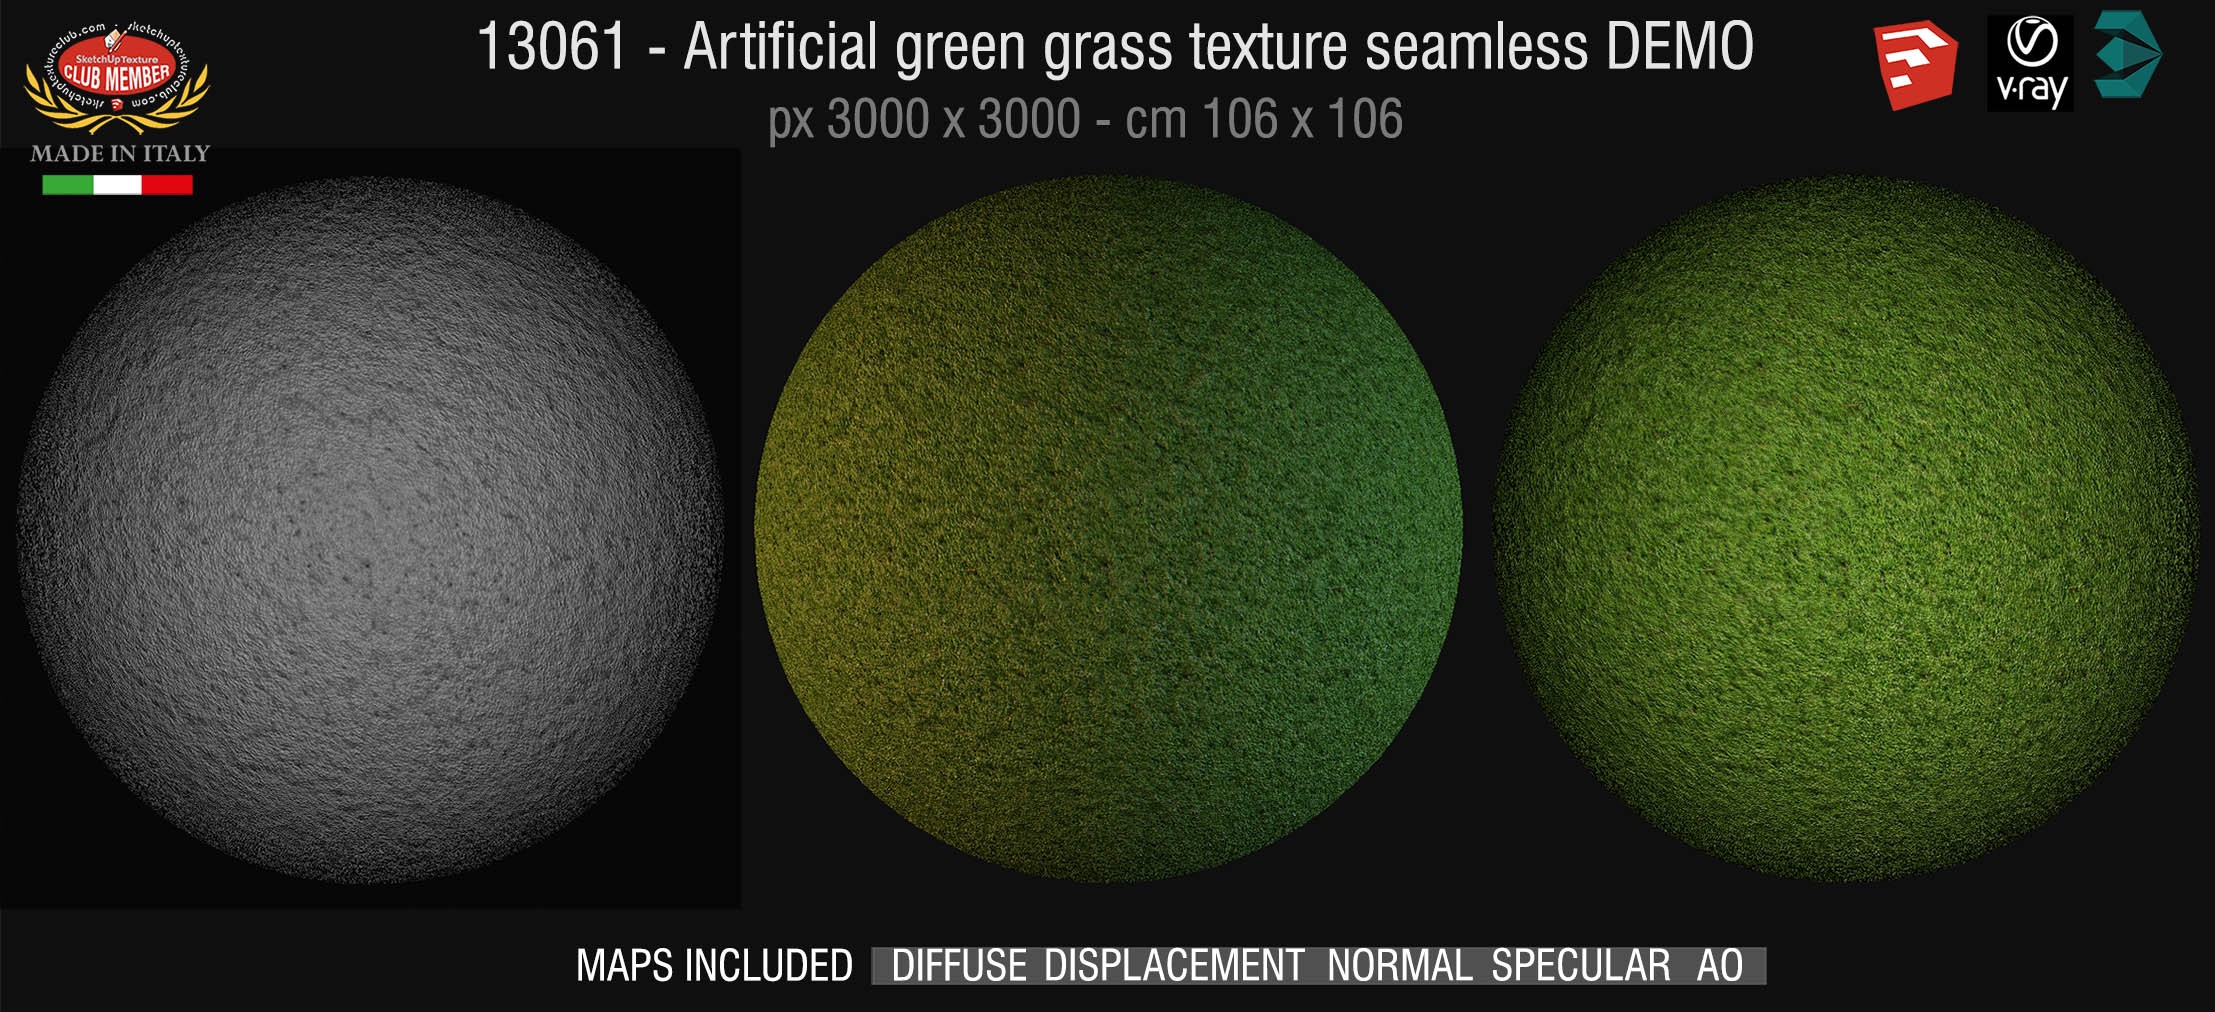 13061 HR Artificial green grass texture + maps DEMO